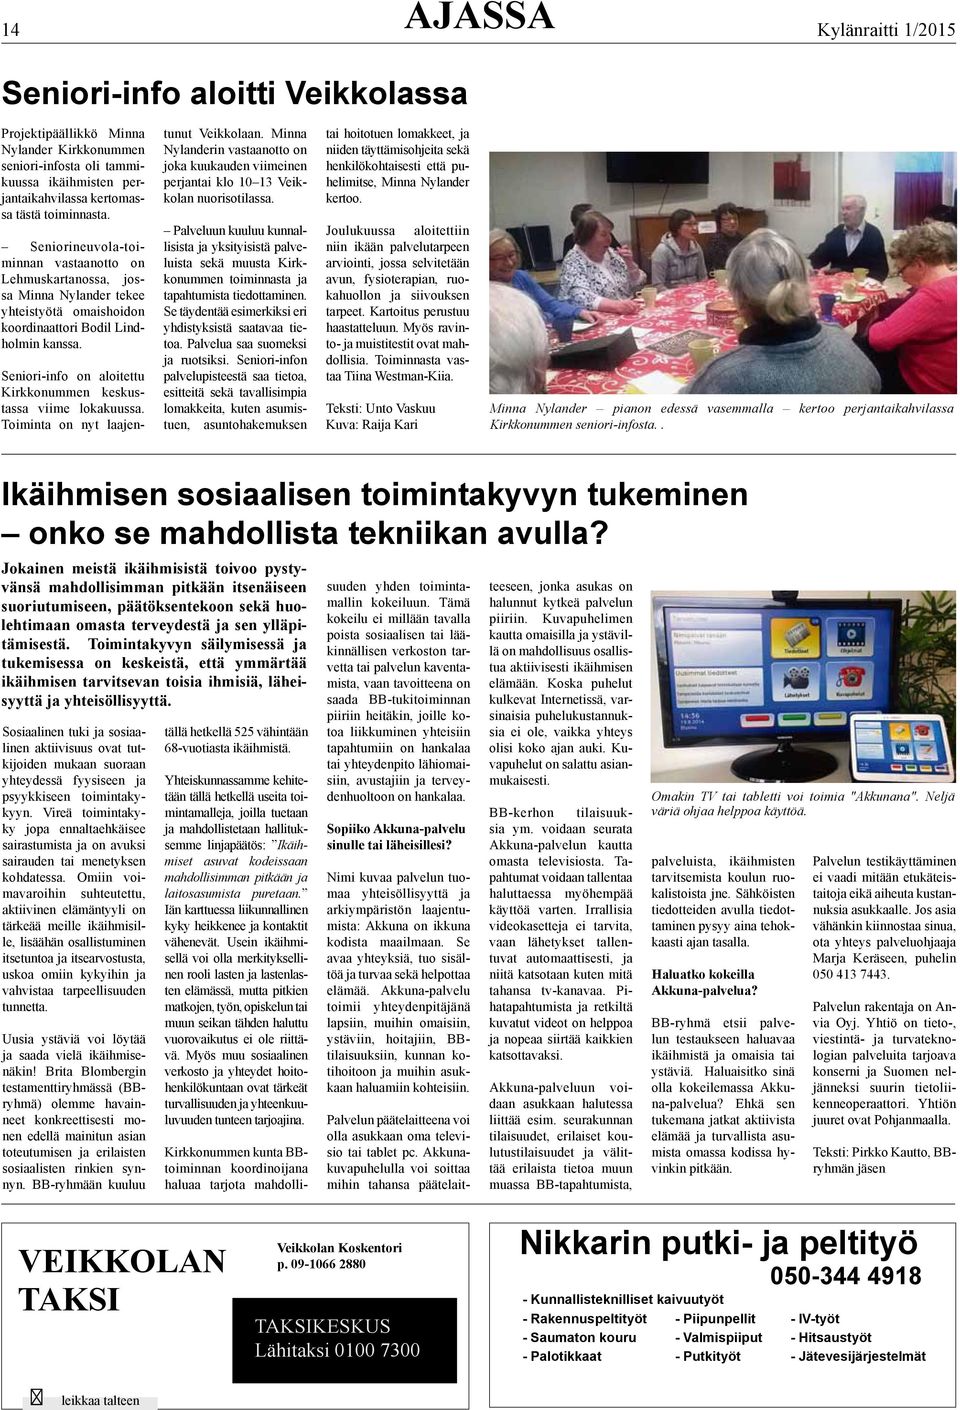 Seniori-info on aloitettu Kirkkonummen keskustassa viime lokakuussa. oiminta on nyt laajentunut Veikkolaan.